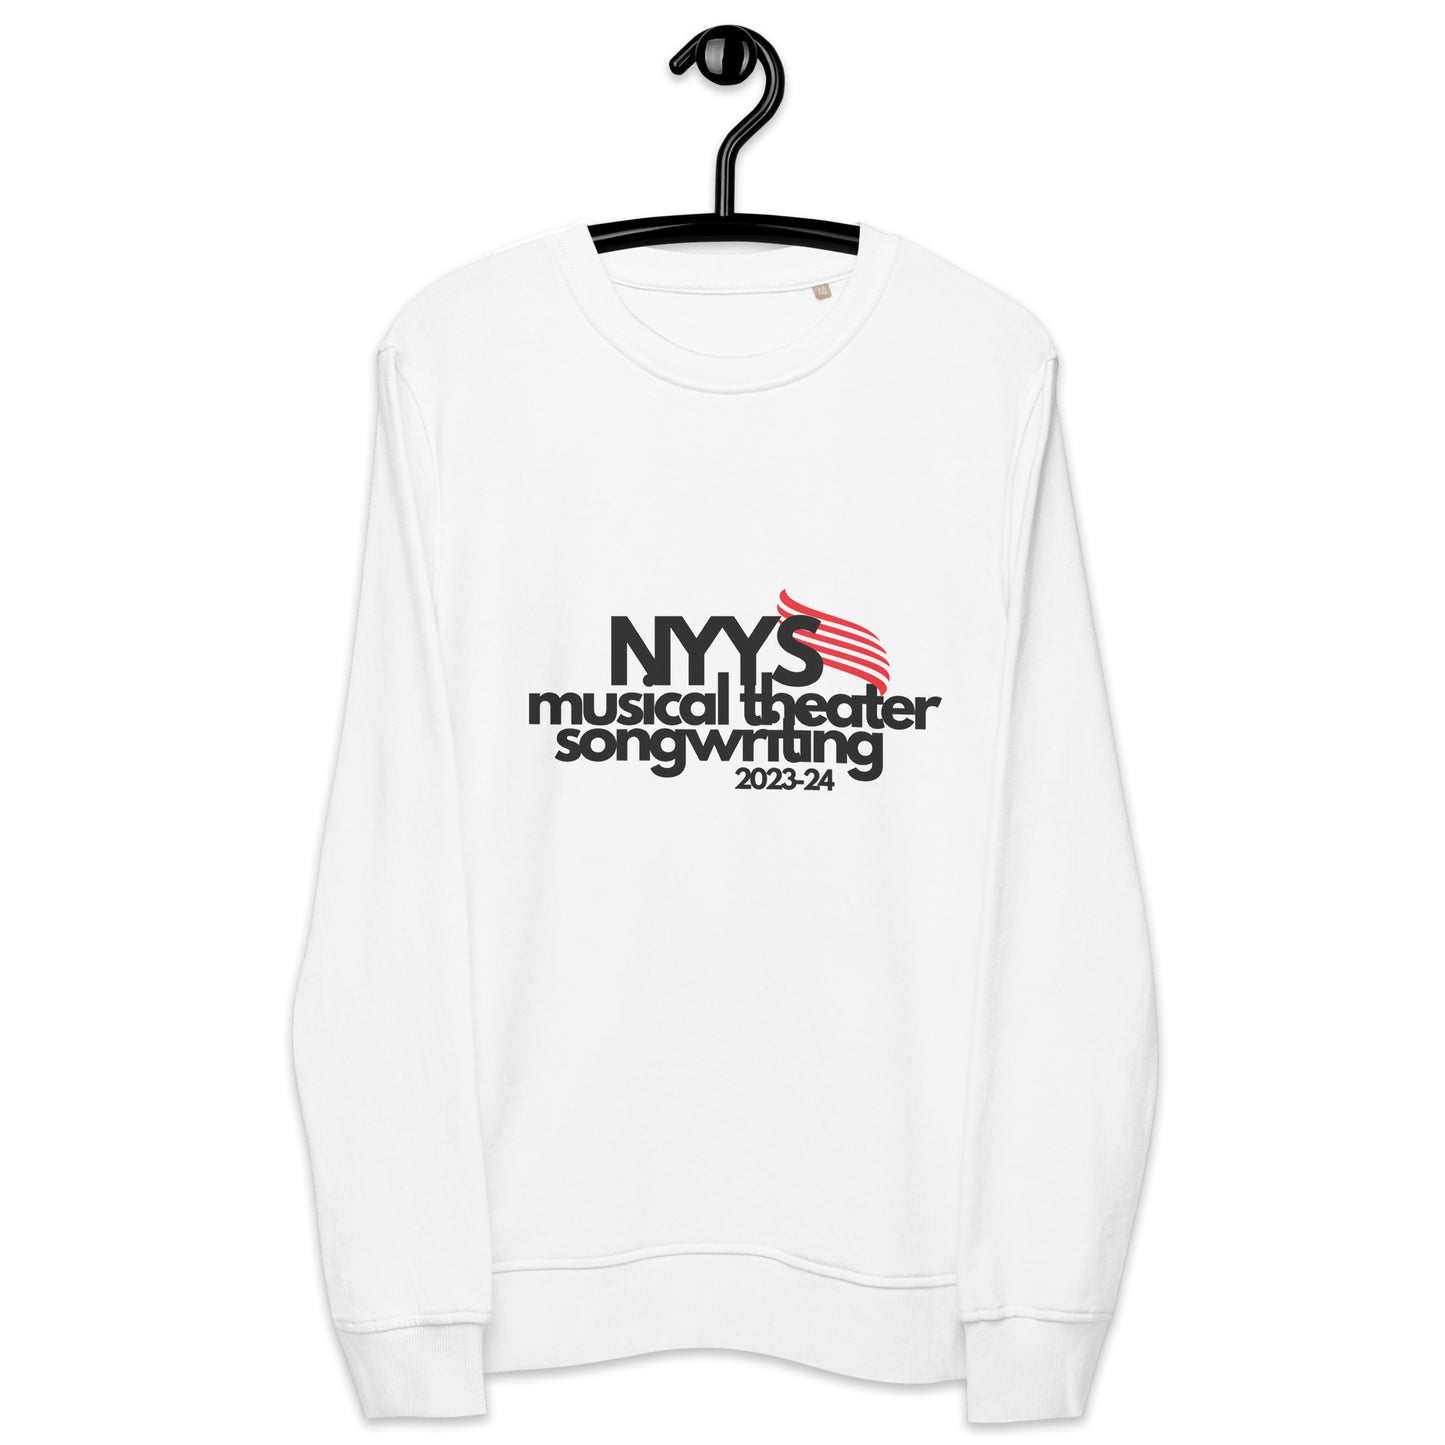 NYYS Musical Theater Songwriting Unisex organic sweatshirt